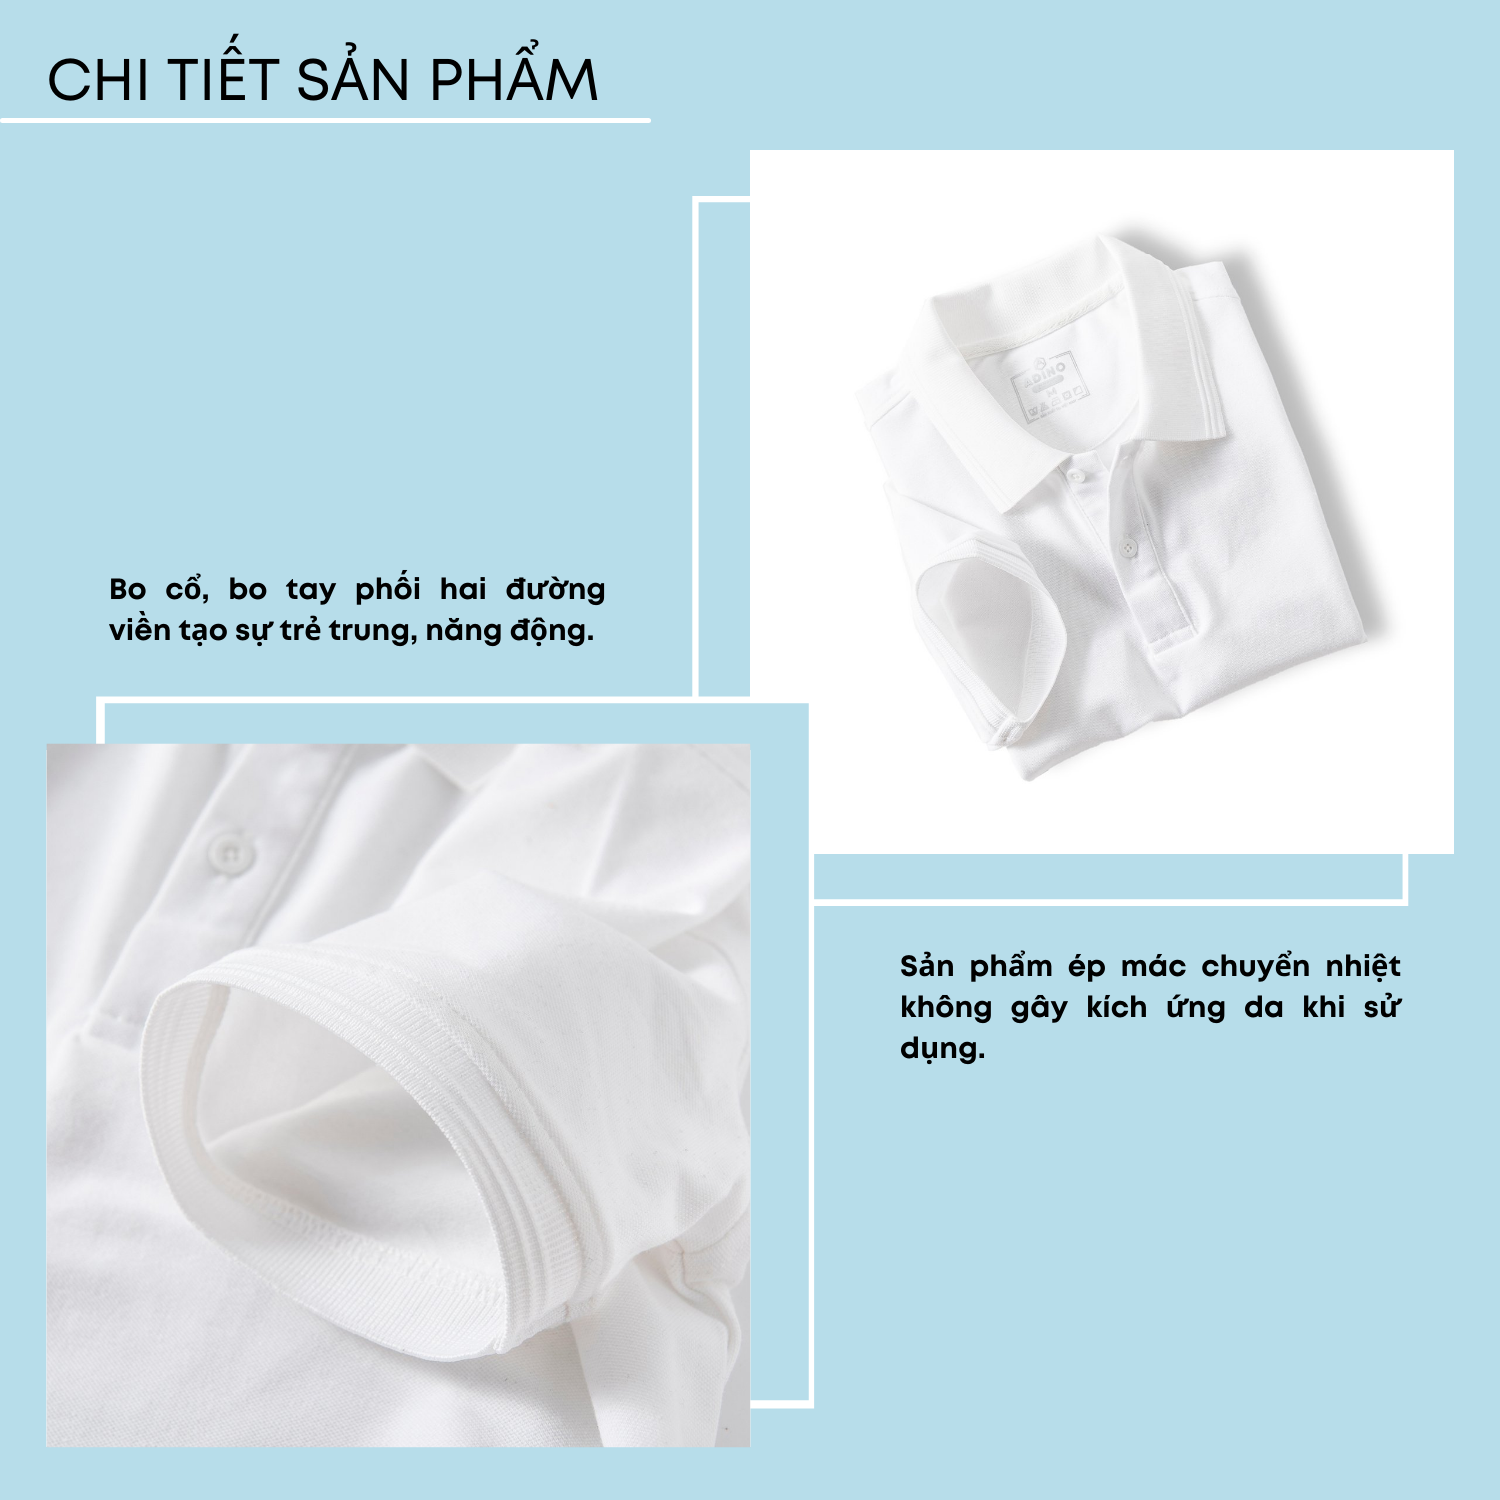 Áo polo nam màu trắng phối viền chìm ADINO vải cotton polyester mềm dáng slimfit trẻ trung năng động AP81